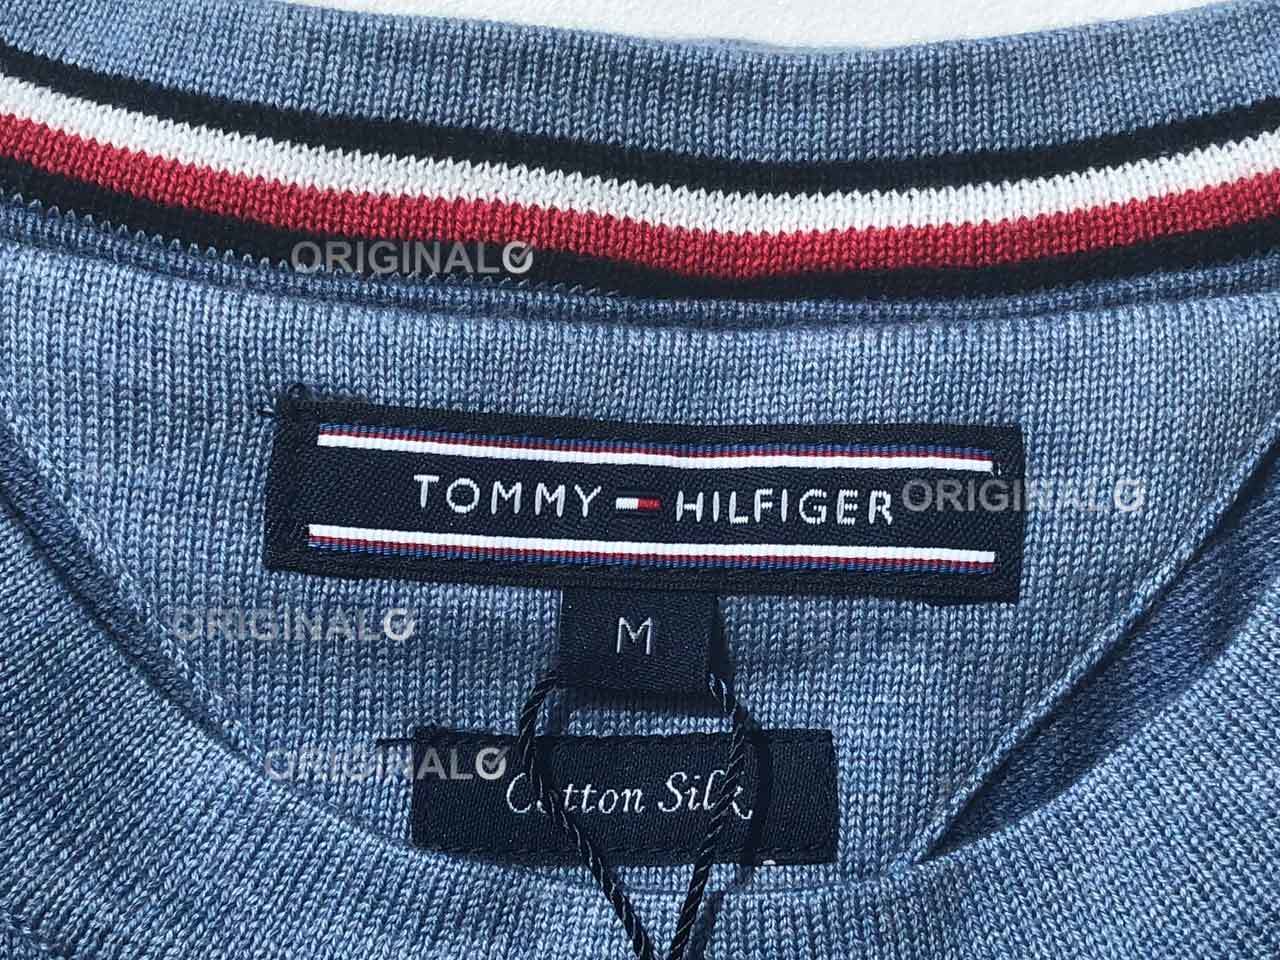 Original Tommy Hilfiger Pullover Etikett von Fake unterscheiden